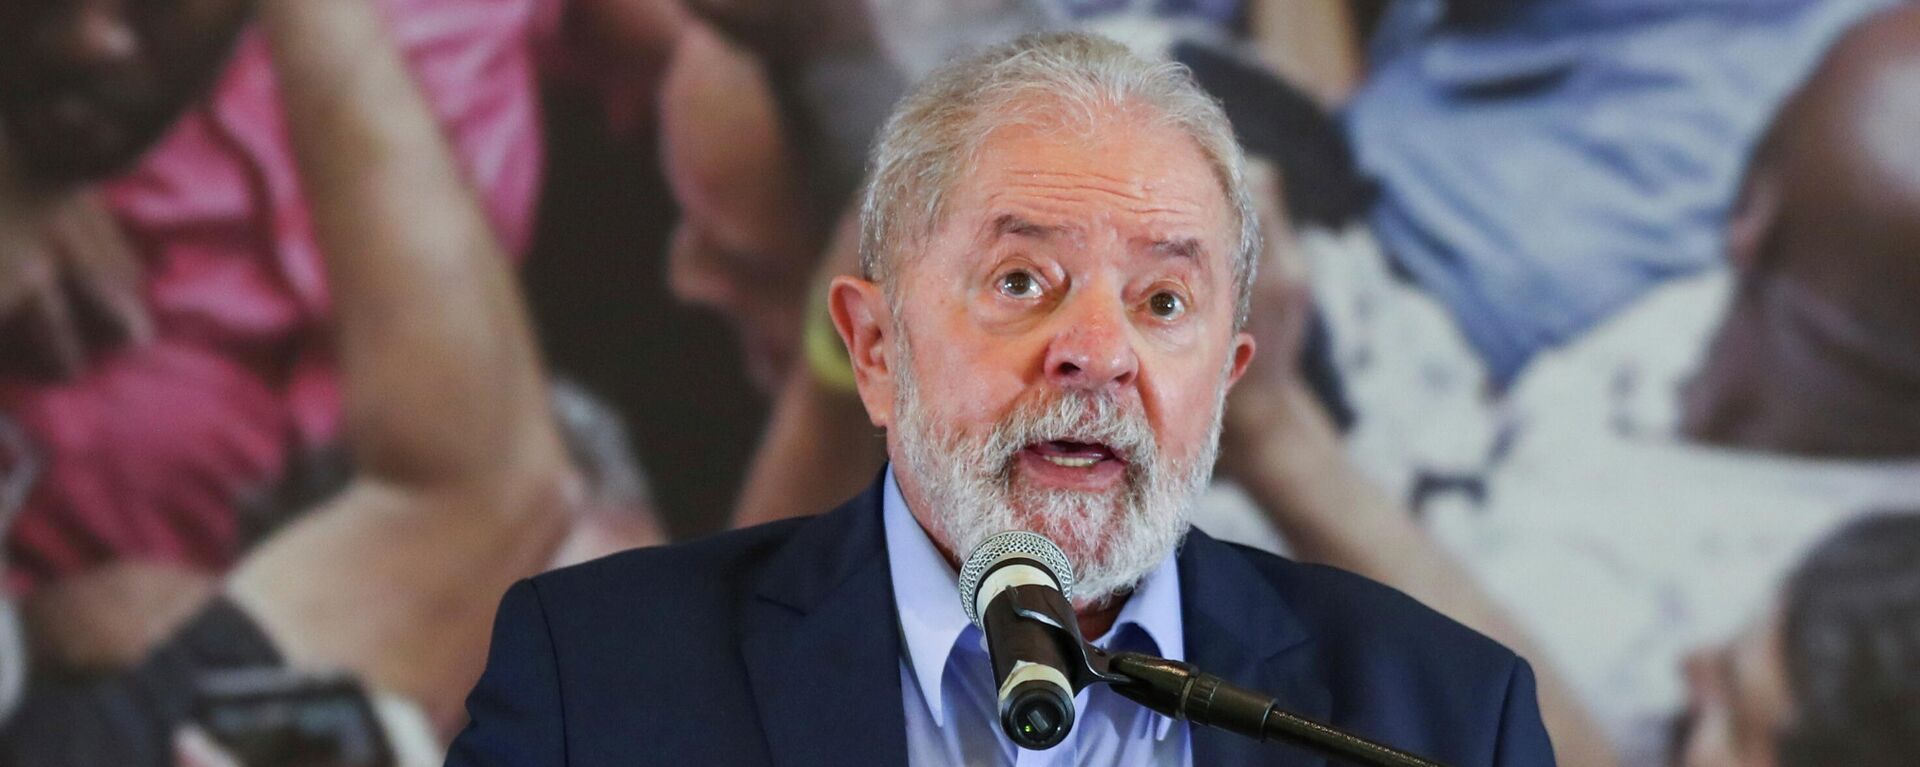 Luiz Inácio Lula da Silva, expresidente brasileño - Sputnik Mundo, 1920, 11.03.2021